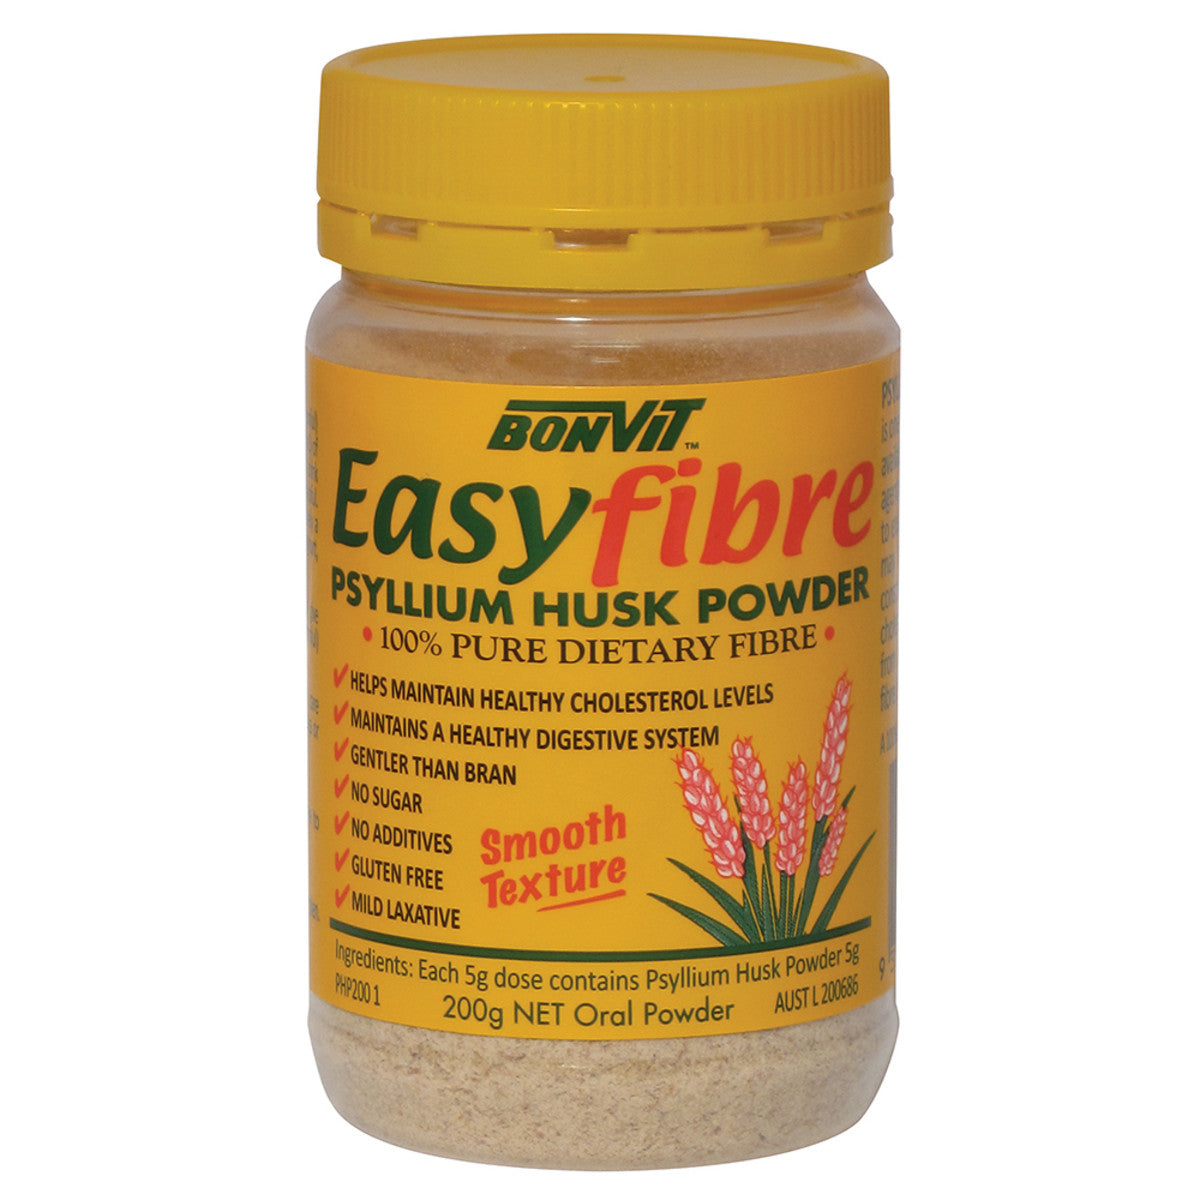 Bonvit - Easyfibre Psyllium Husk Powder